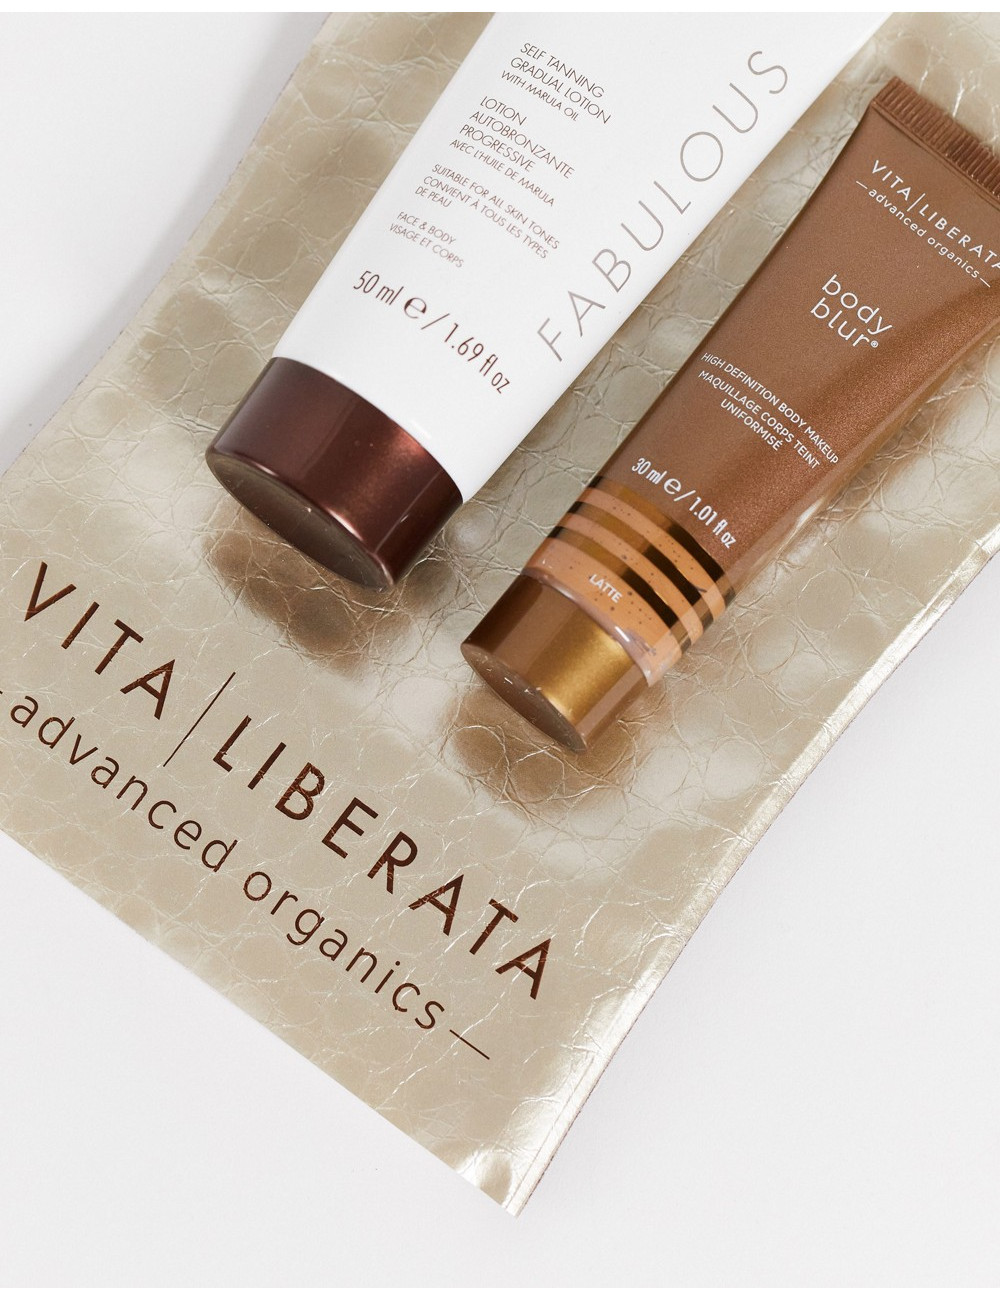 Vita Liberata Beauty To Go Kit